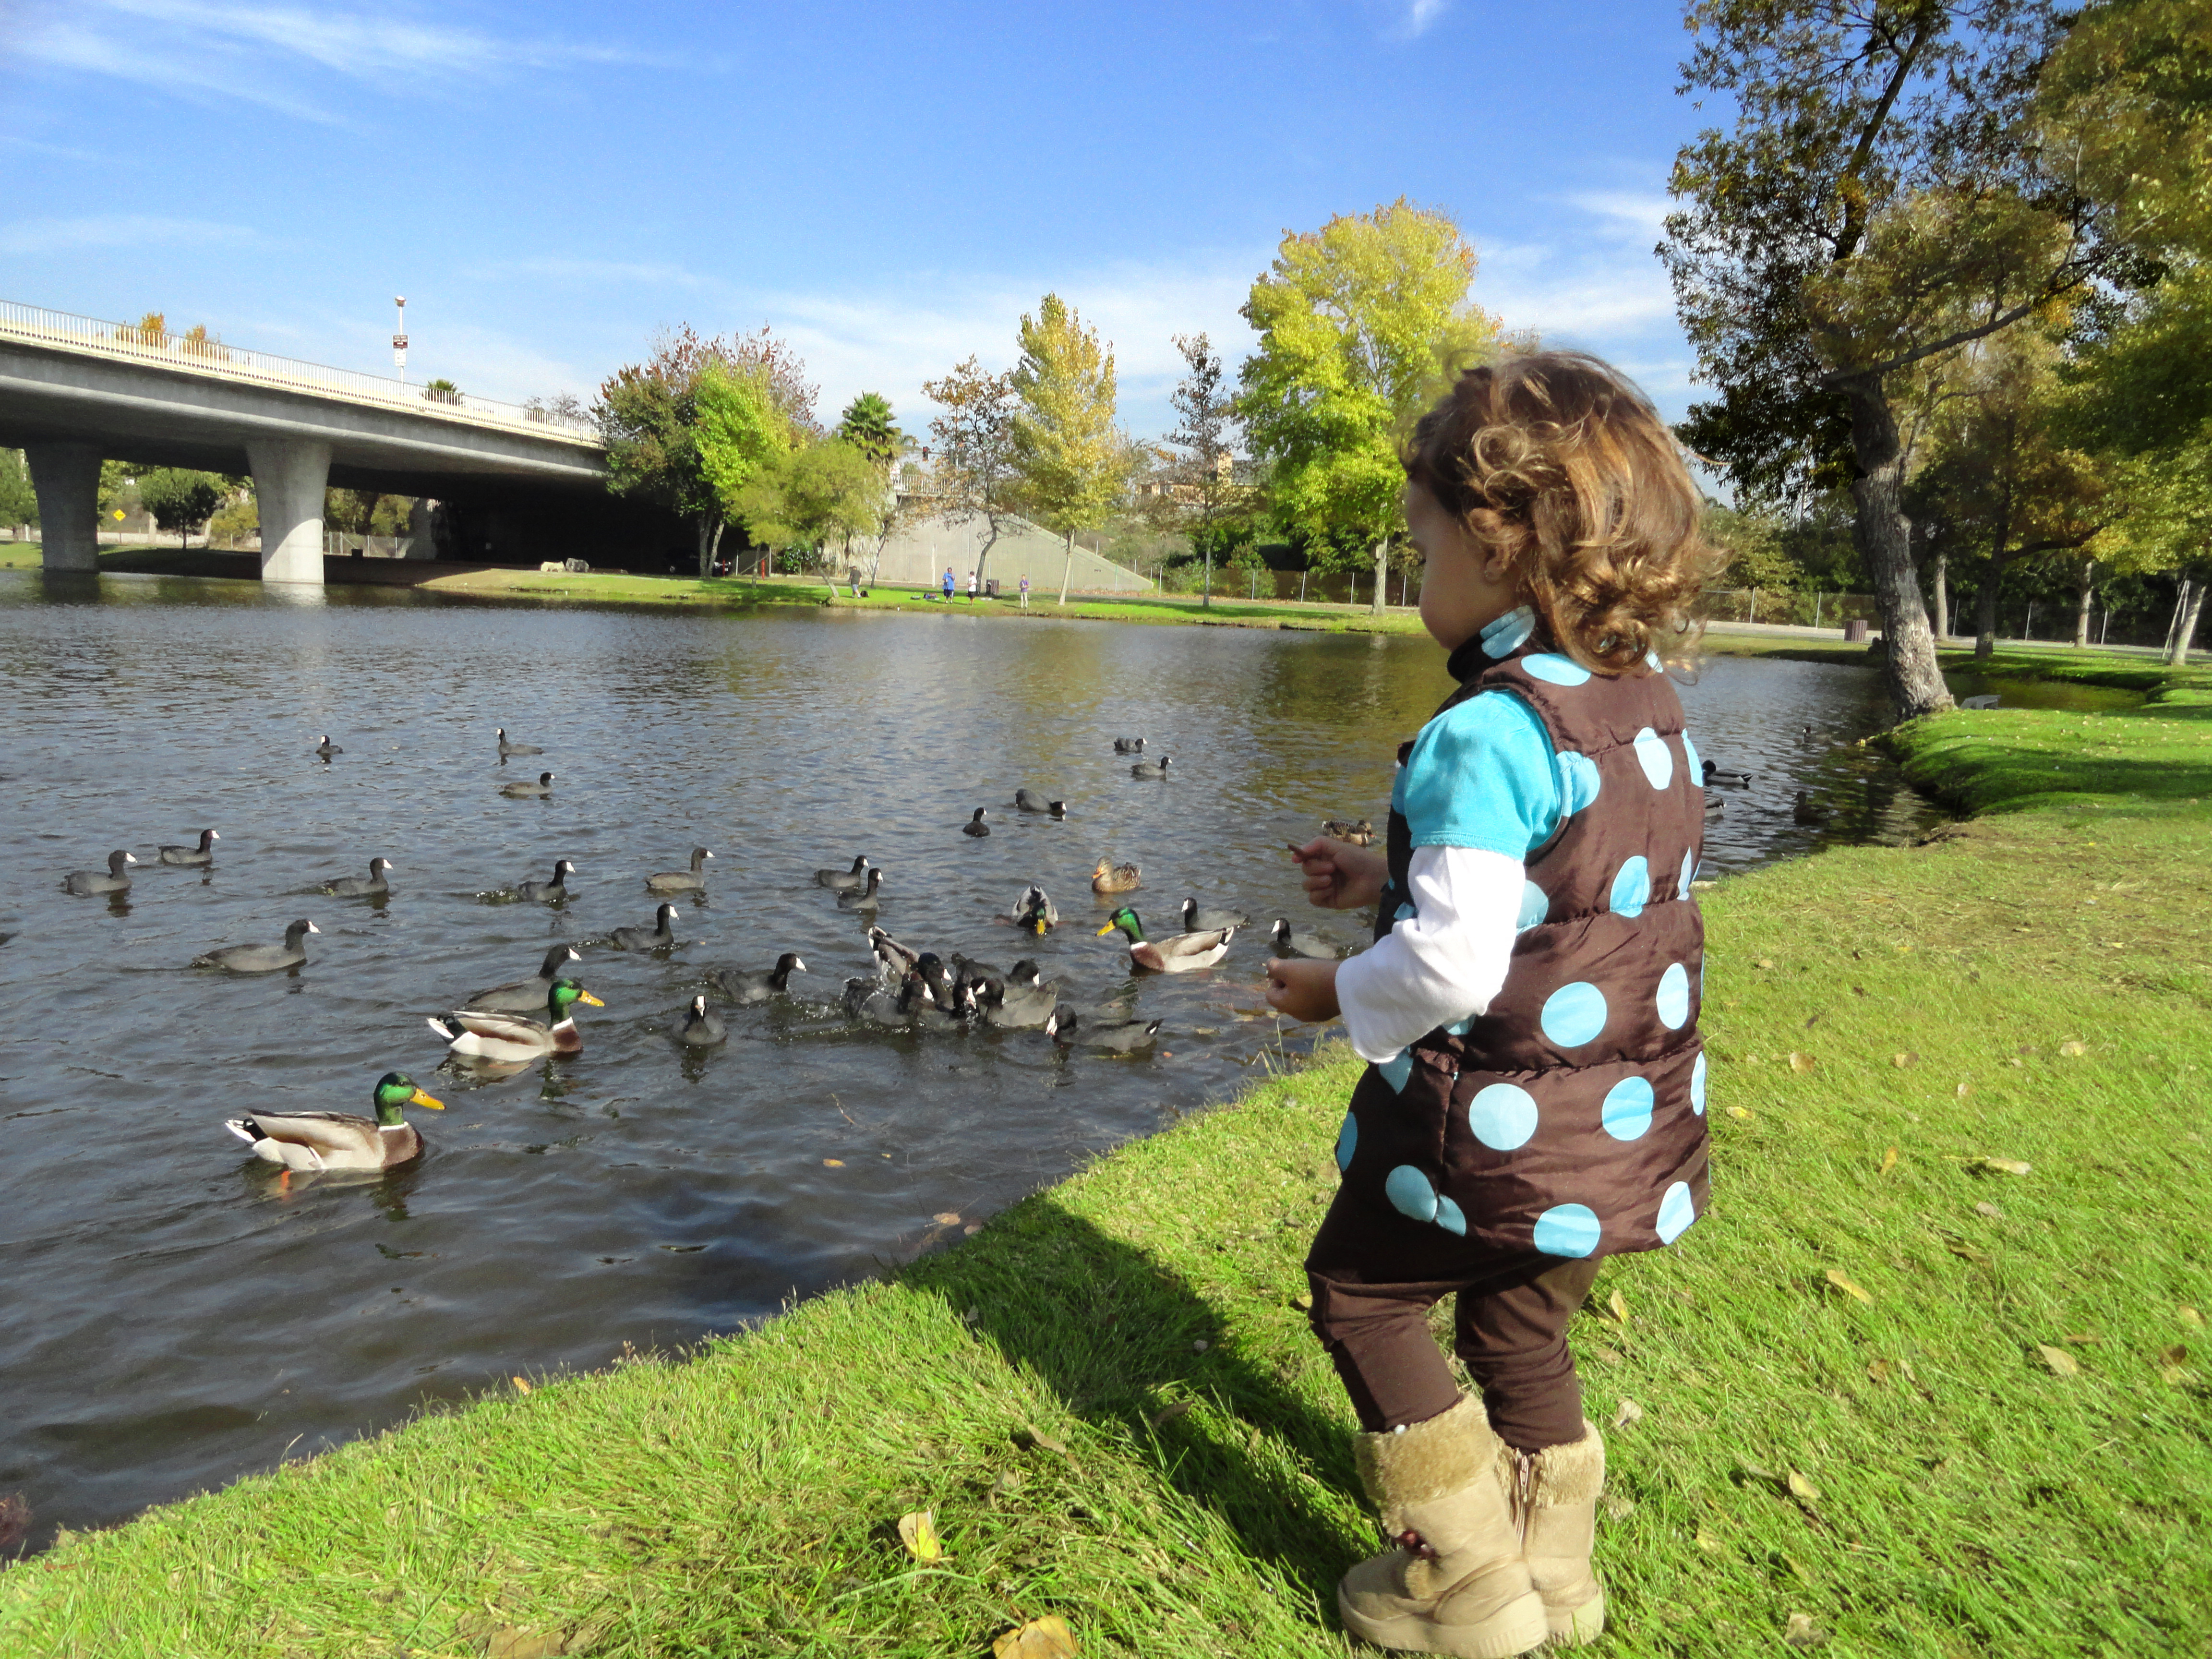 Little Girl feeding the ducks